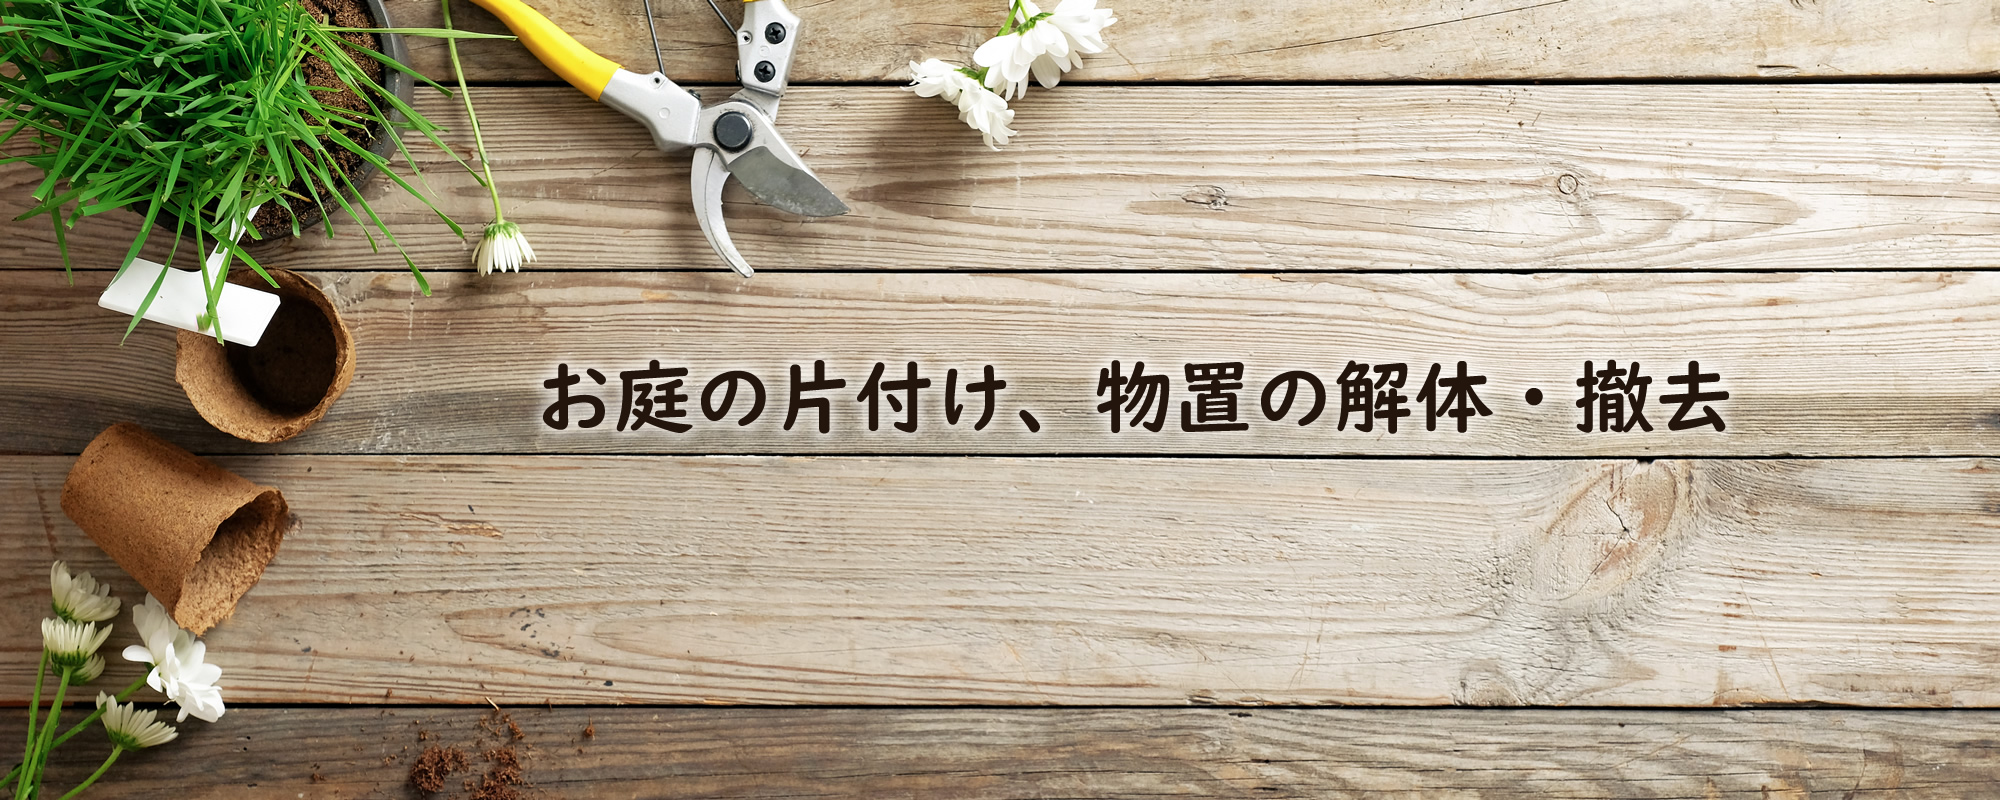 神奈川の遺品整理なら片づけコーナン株式会社 港南サービスメイン画像2